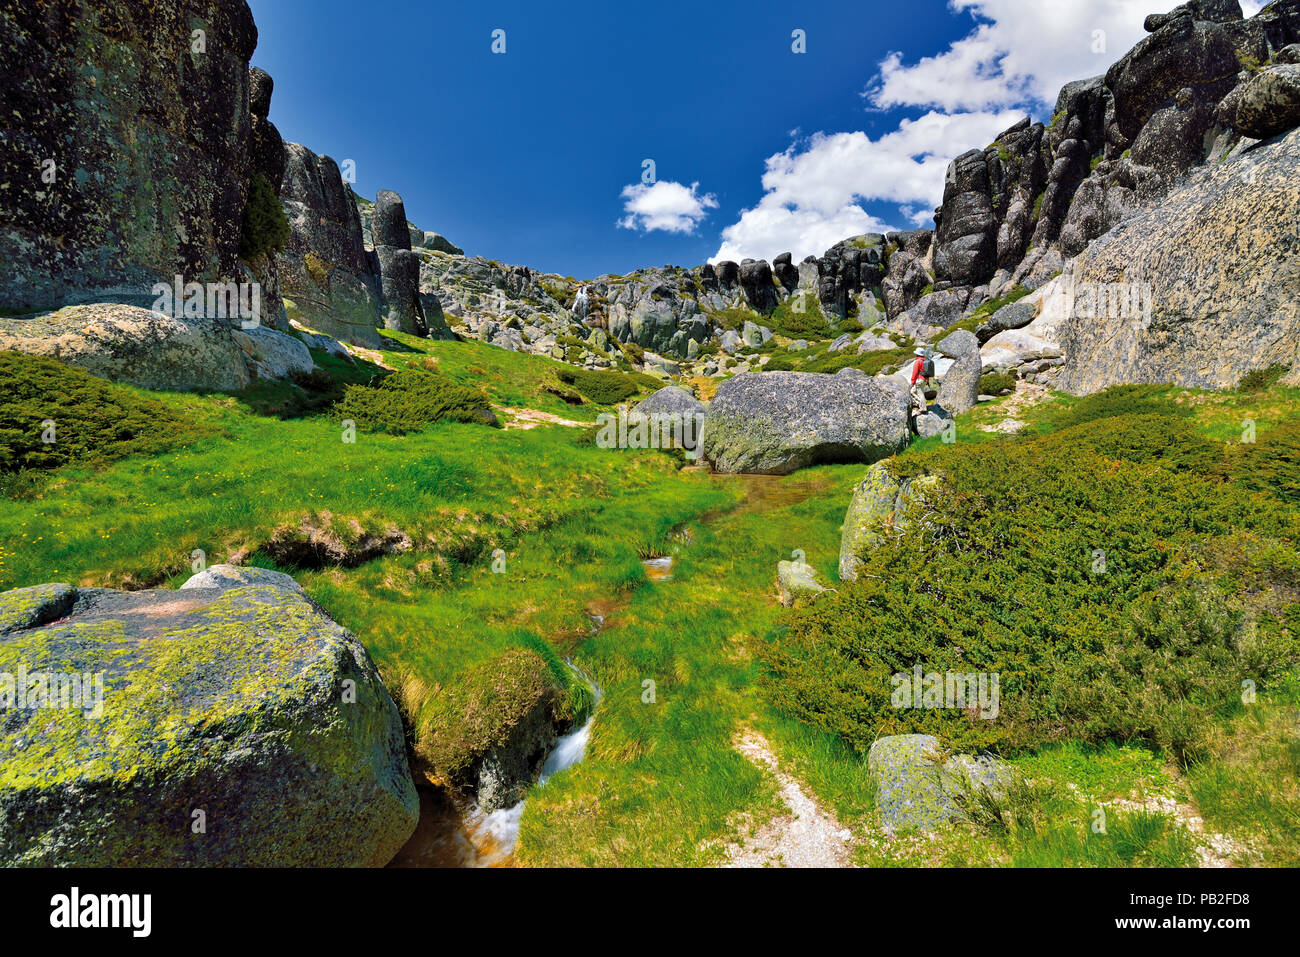 Touristische stehend auf einem Granitfelsen in einem Berggebiet von Granit pics und grüne Vegetation umgeben Stockfoto